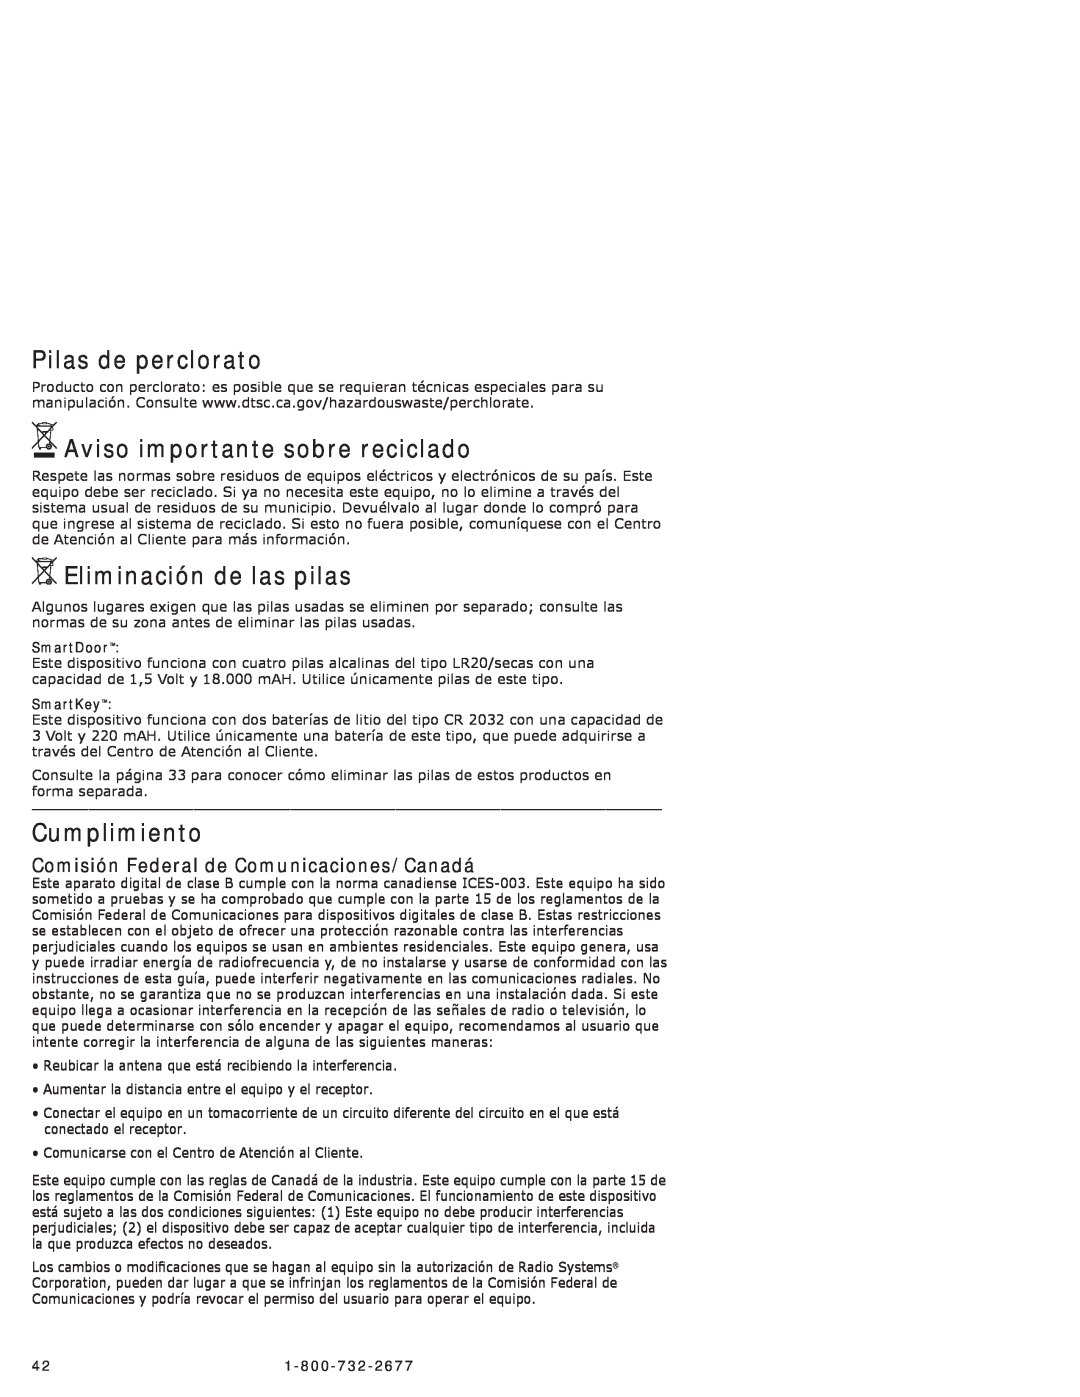 Petsafe PPA11-10711 manual Pilas de perclorato, Aviso importante sobre reciclado, Eliminación de las pilas, Cumplimiento 